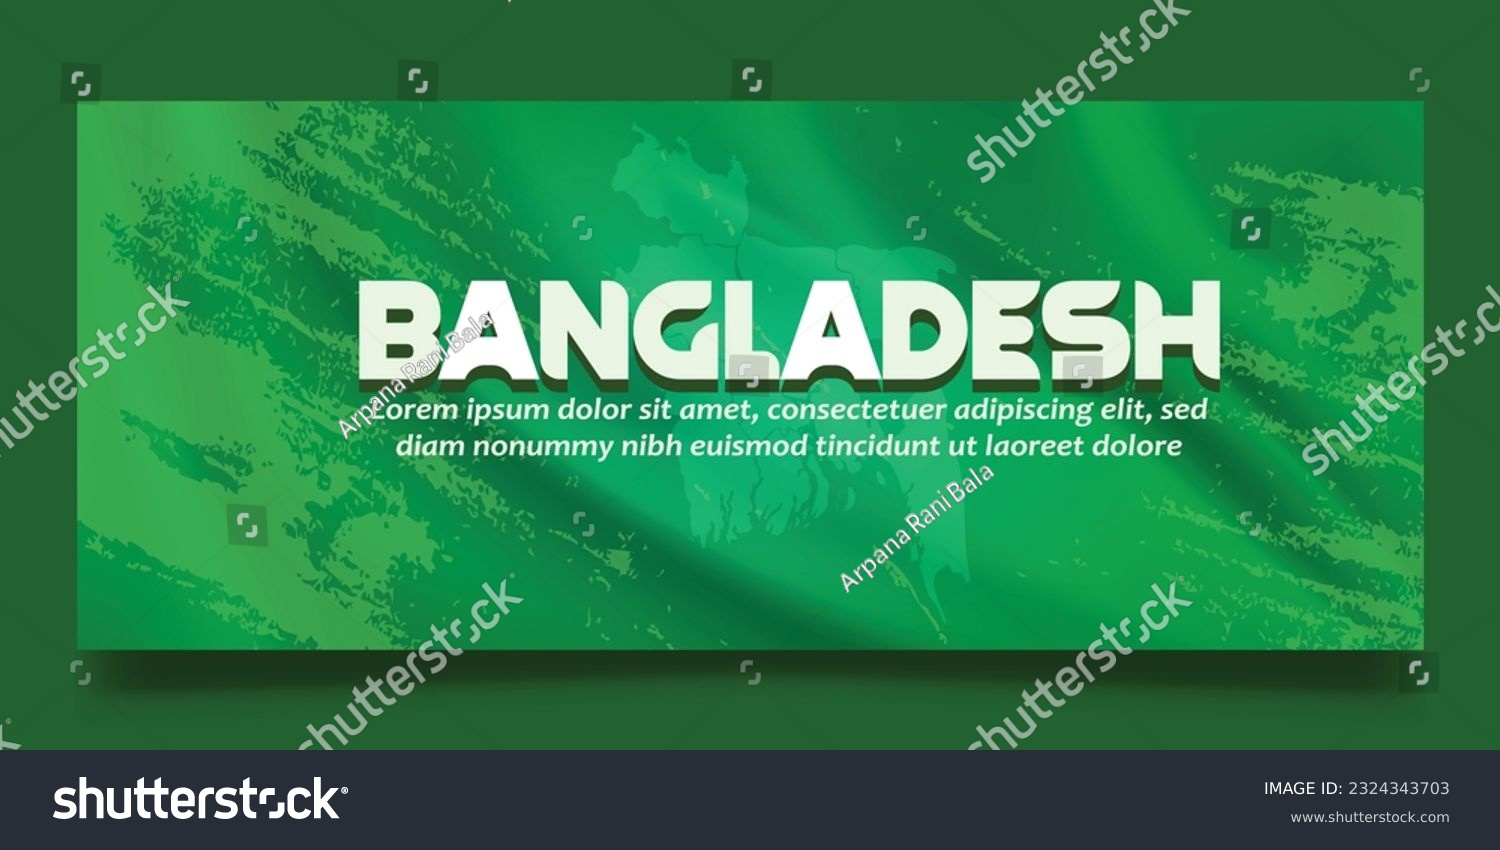 SVG of Web Banner Design for business svg